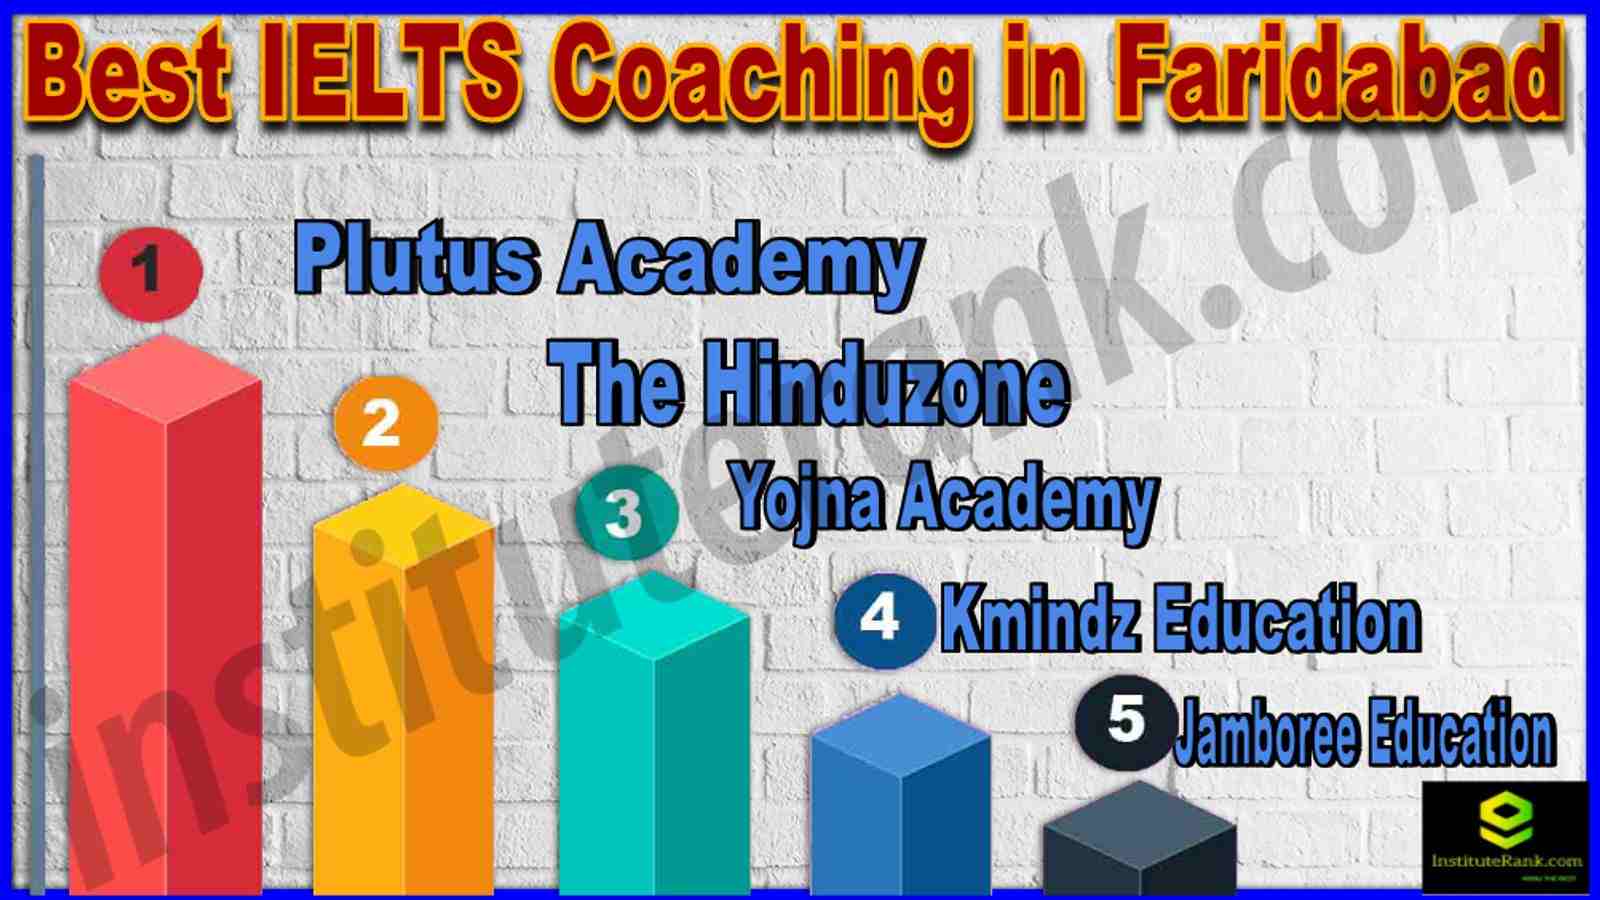 Best IELTS Coaching in Faridabad